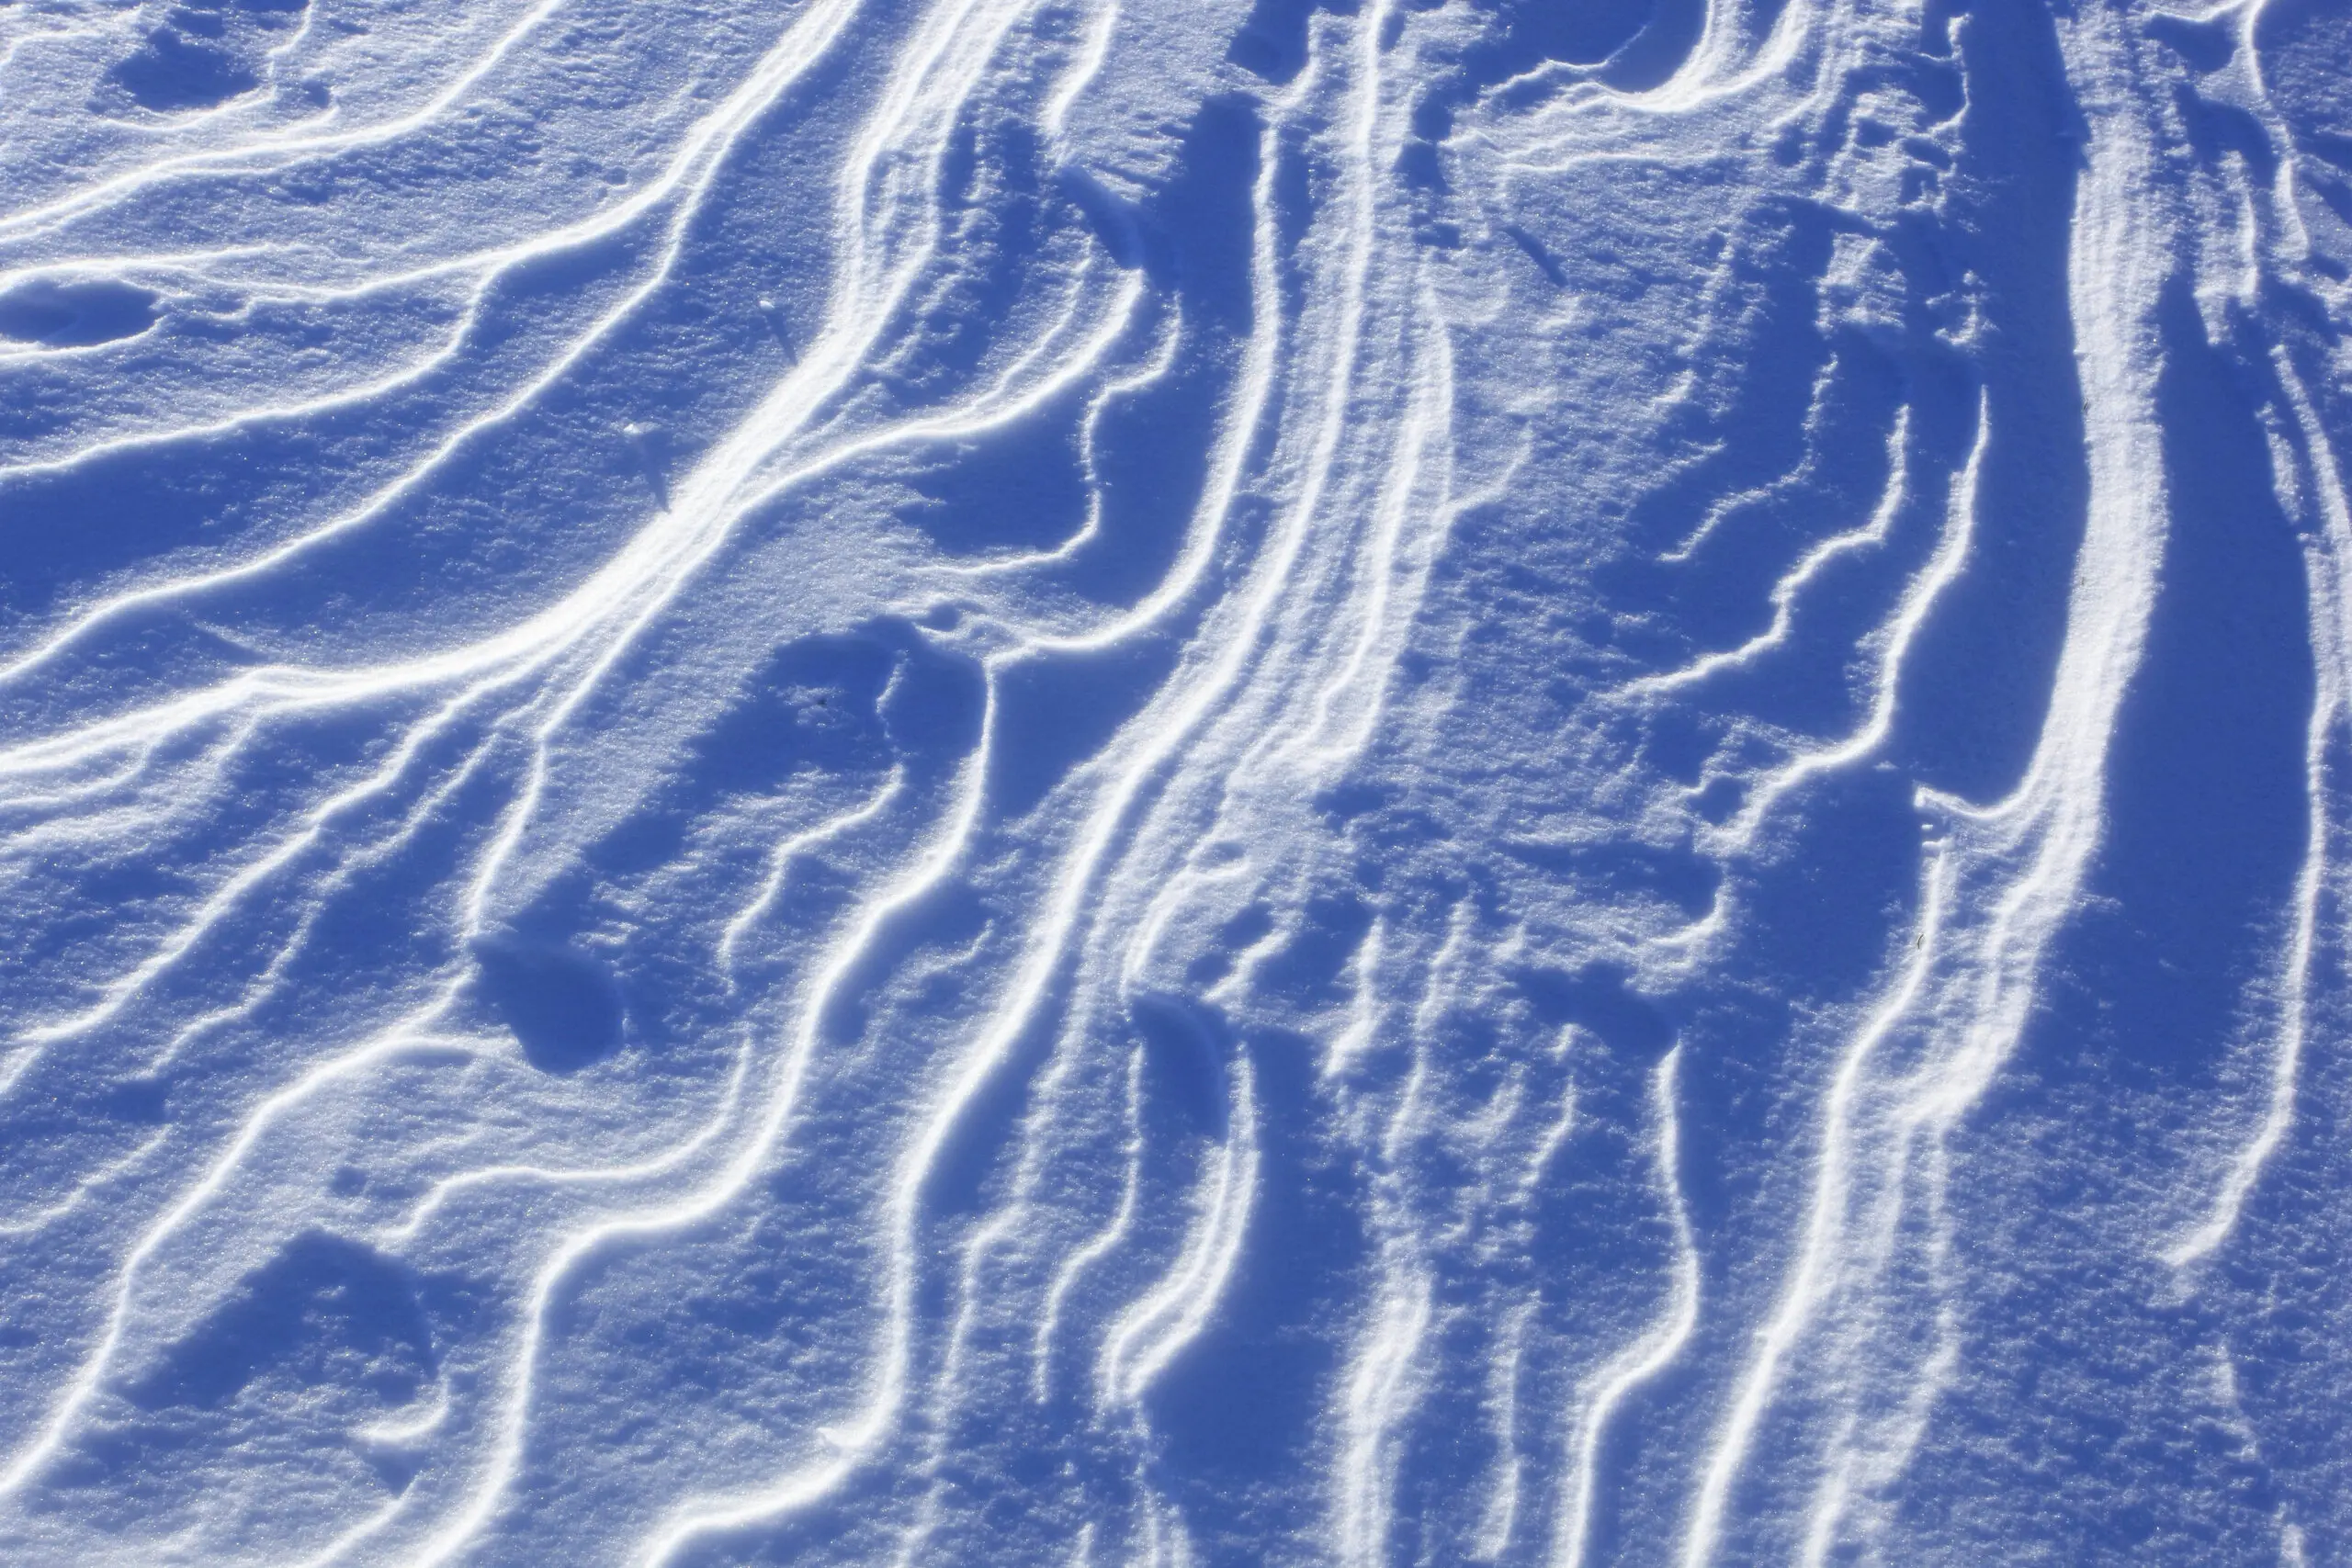 Wandbild (5430) snow wave by picture alliance / blickwinkel/P. Frischknecht präsentiert: Abstrakt,Sonstige Naturdetails